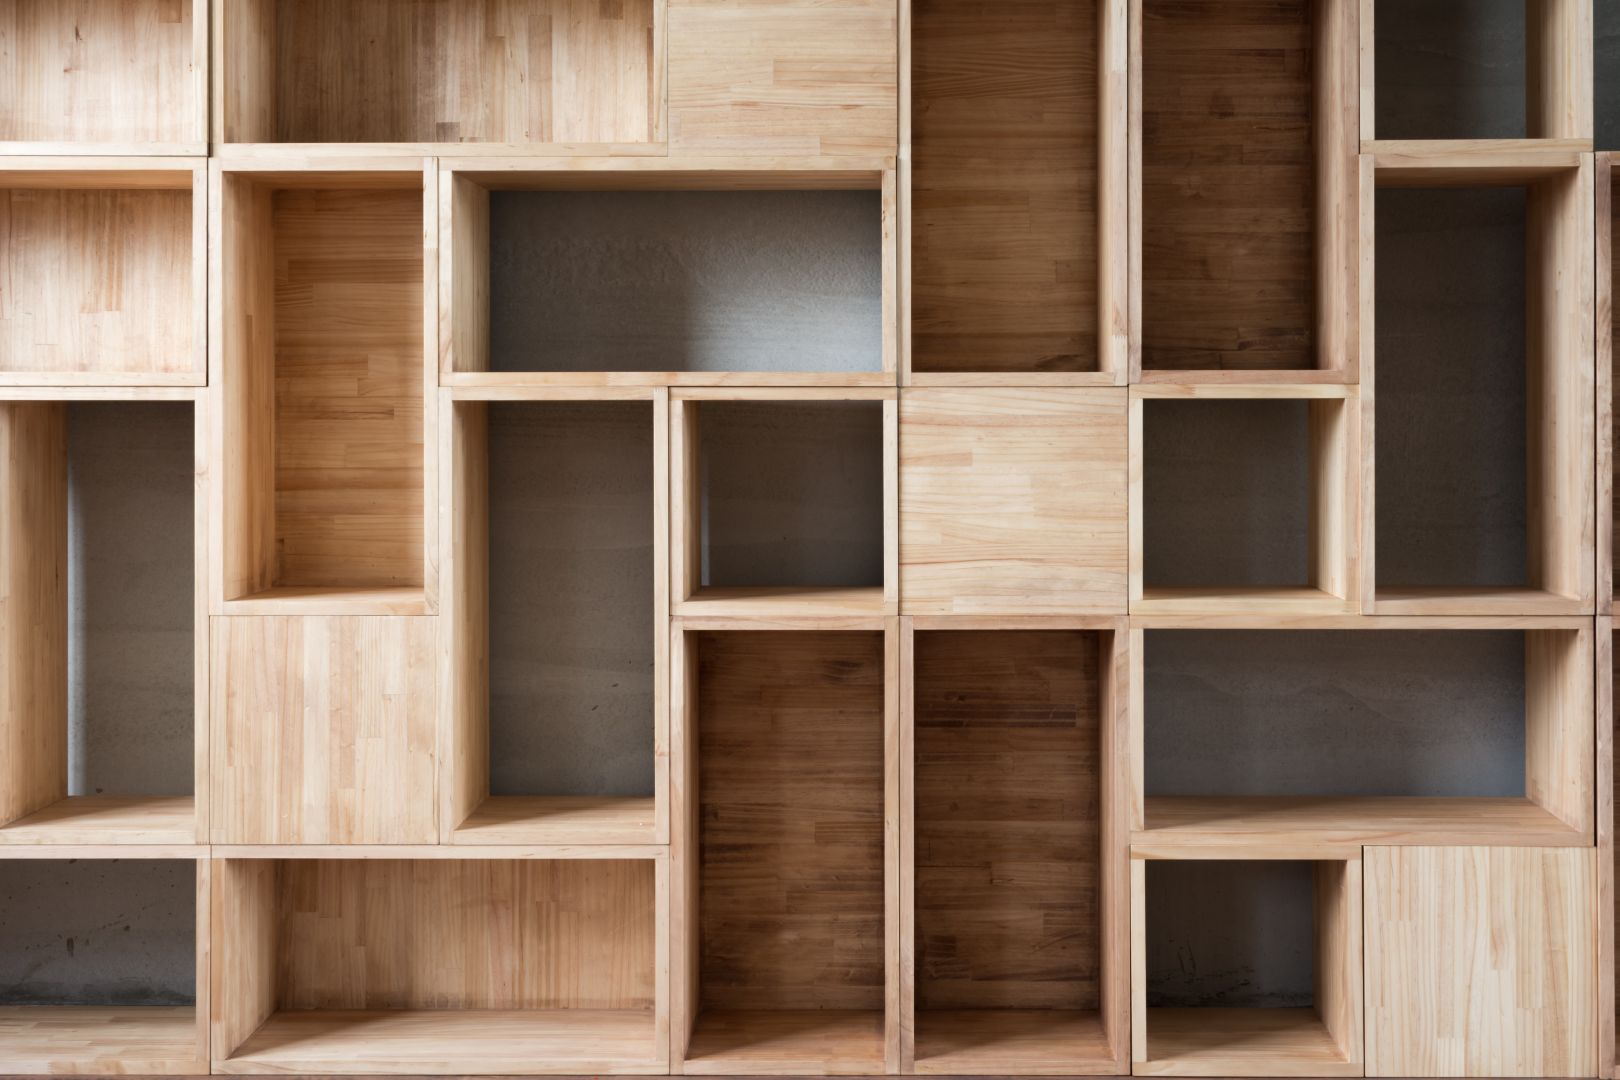 Poptávka na výrobu vestavěné skříně pod dřevěné schodiště (Výroba - skříně) - Litoměřice